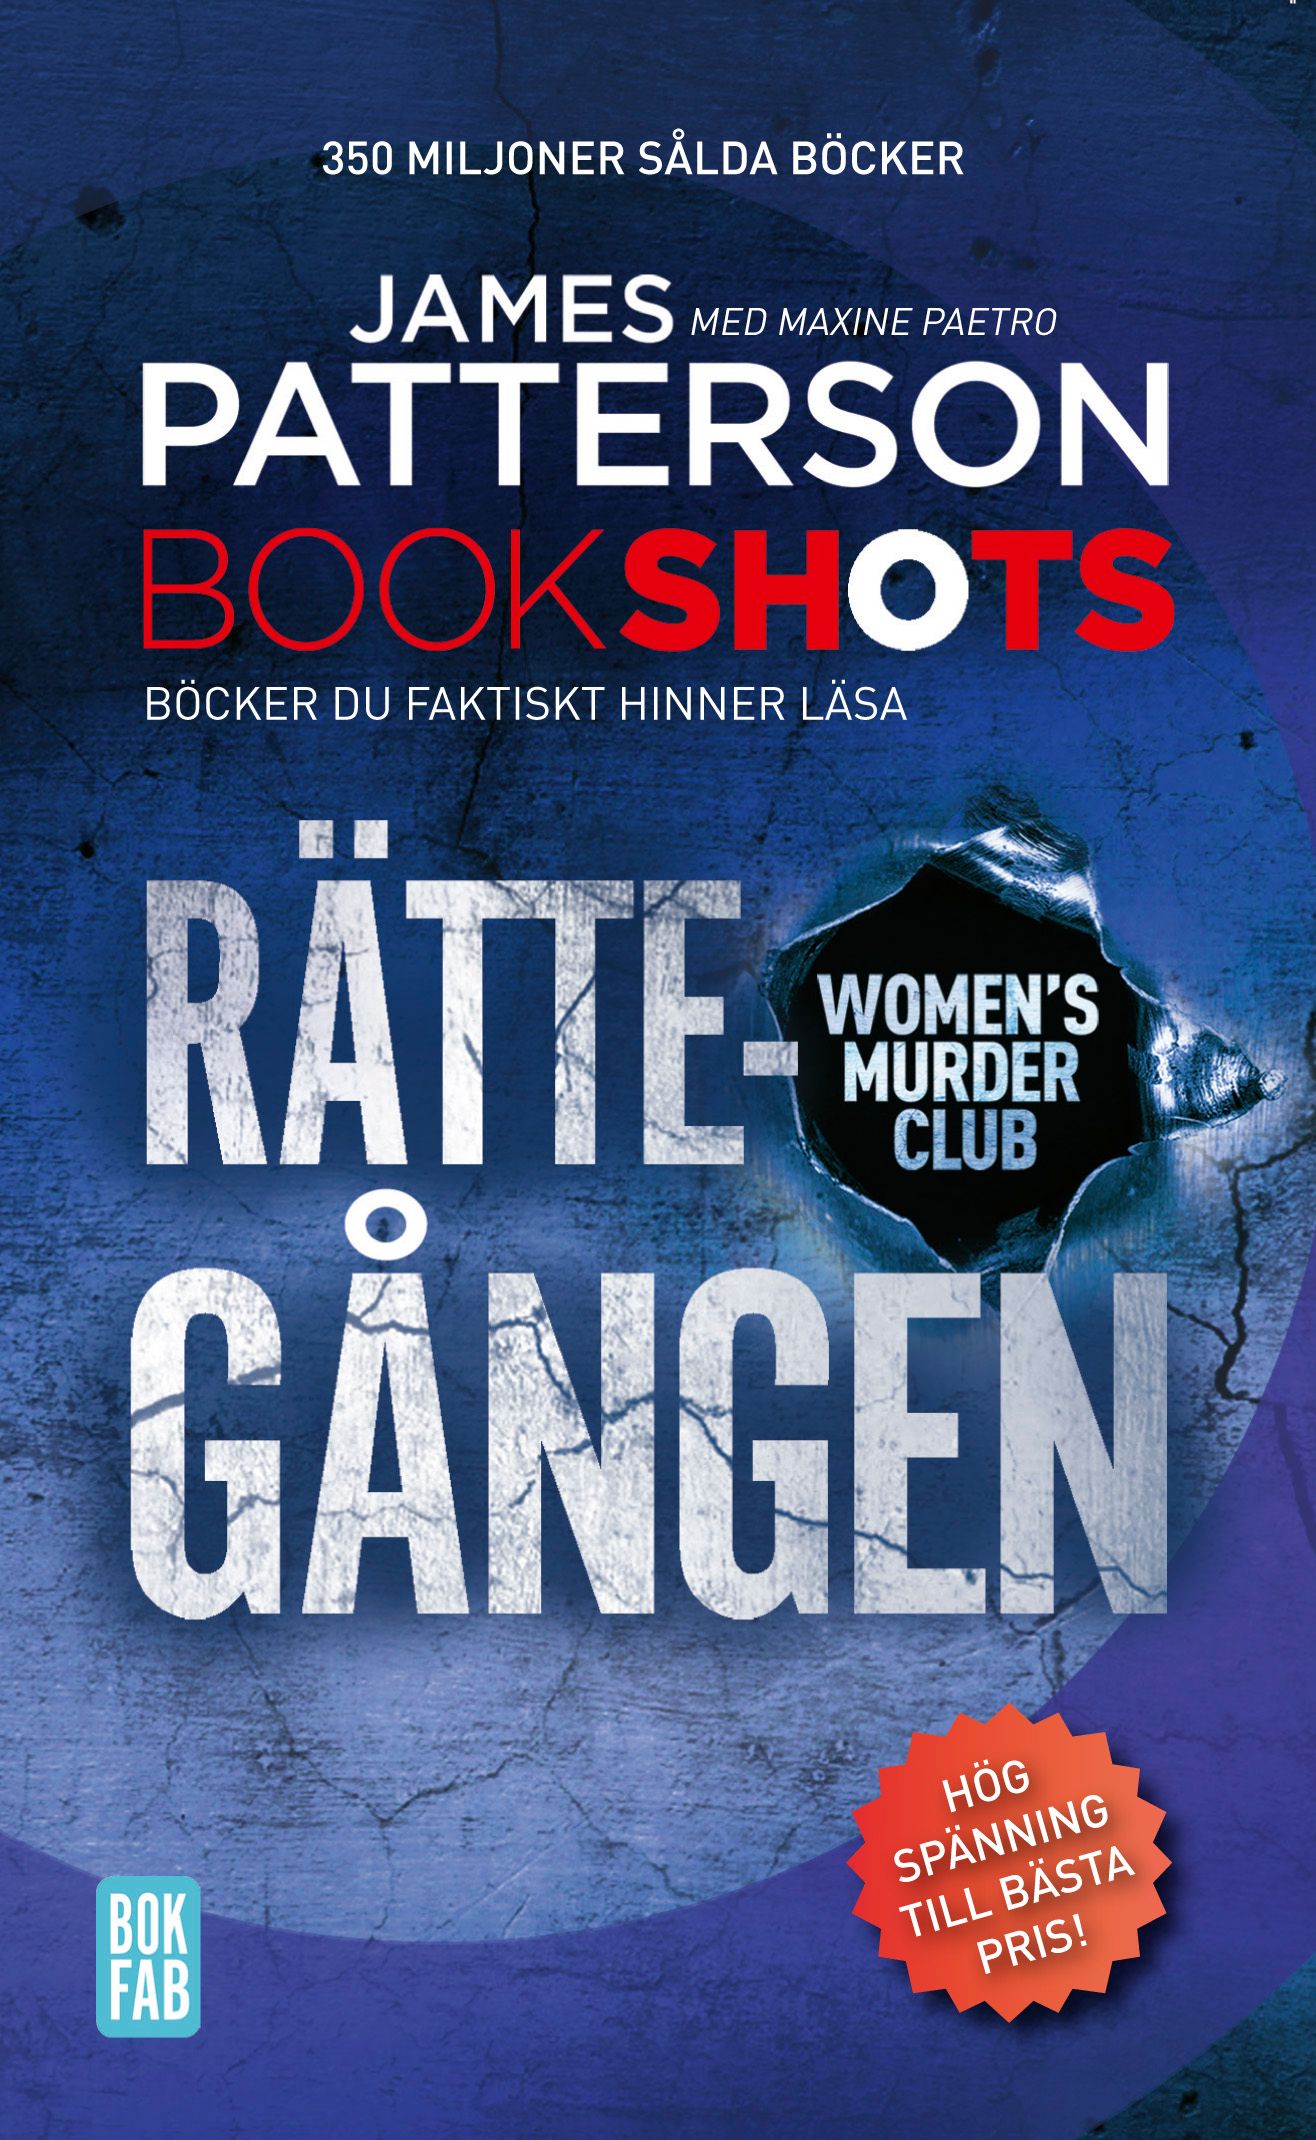 Bookshots: Rättegången - Women's murder club, e-bok av Maxine Paetro, James Patterson